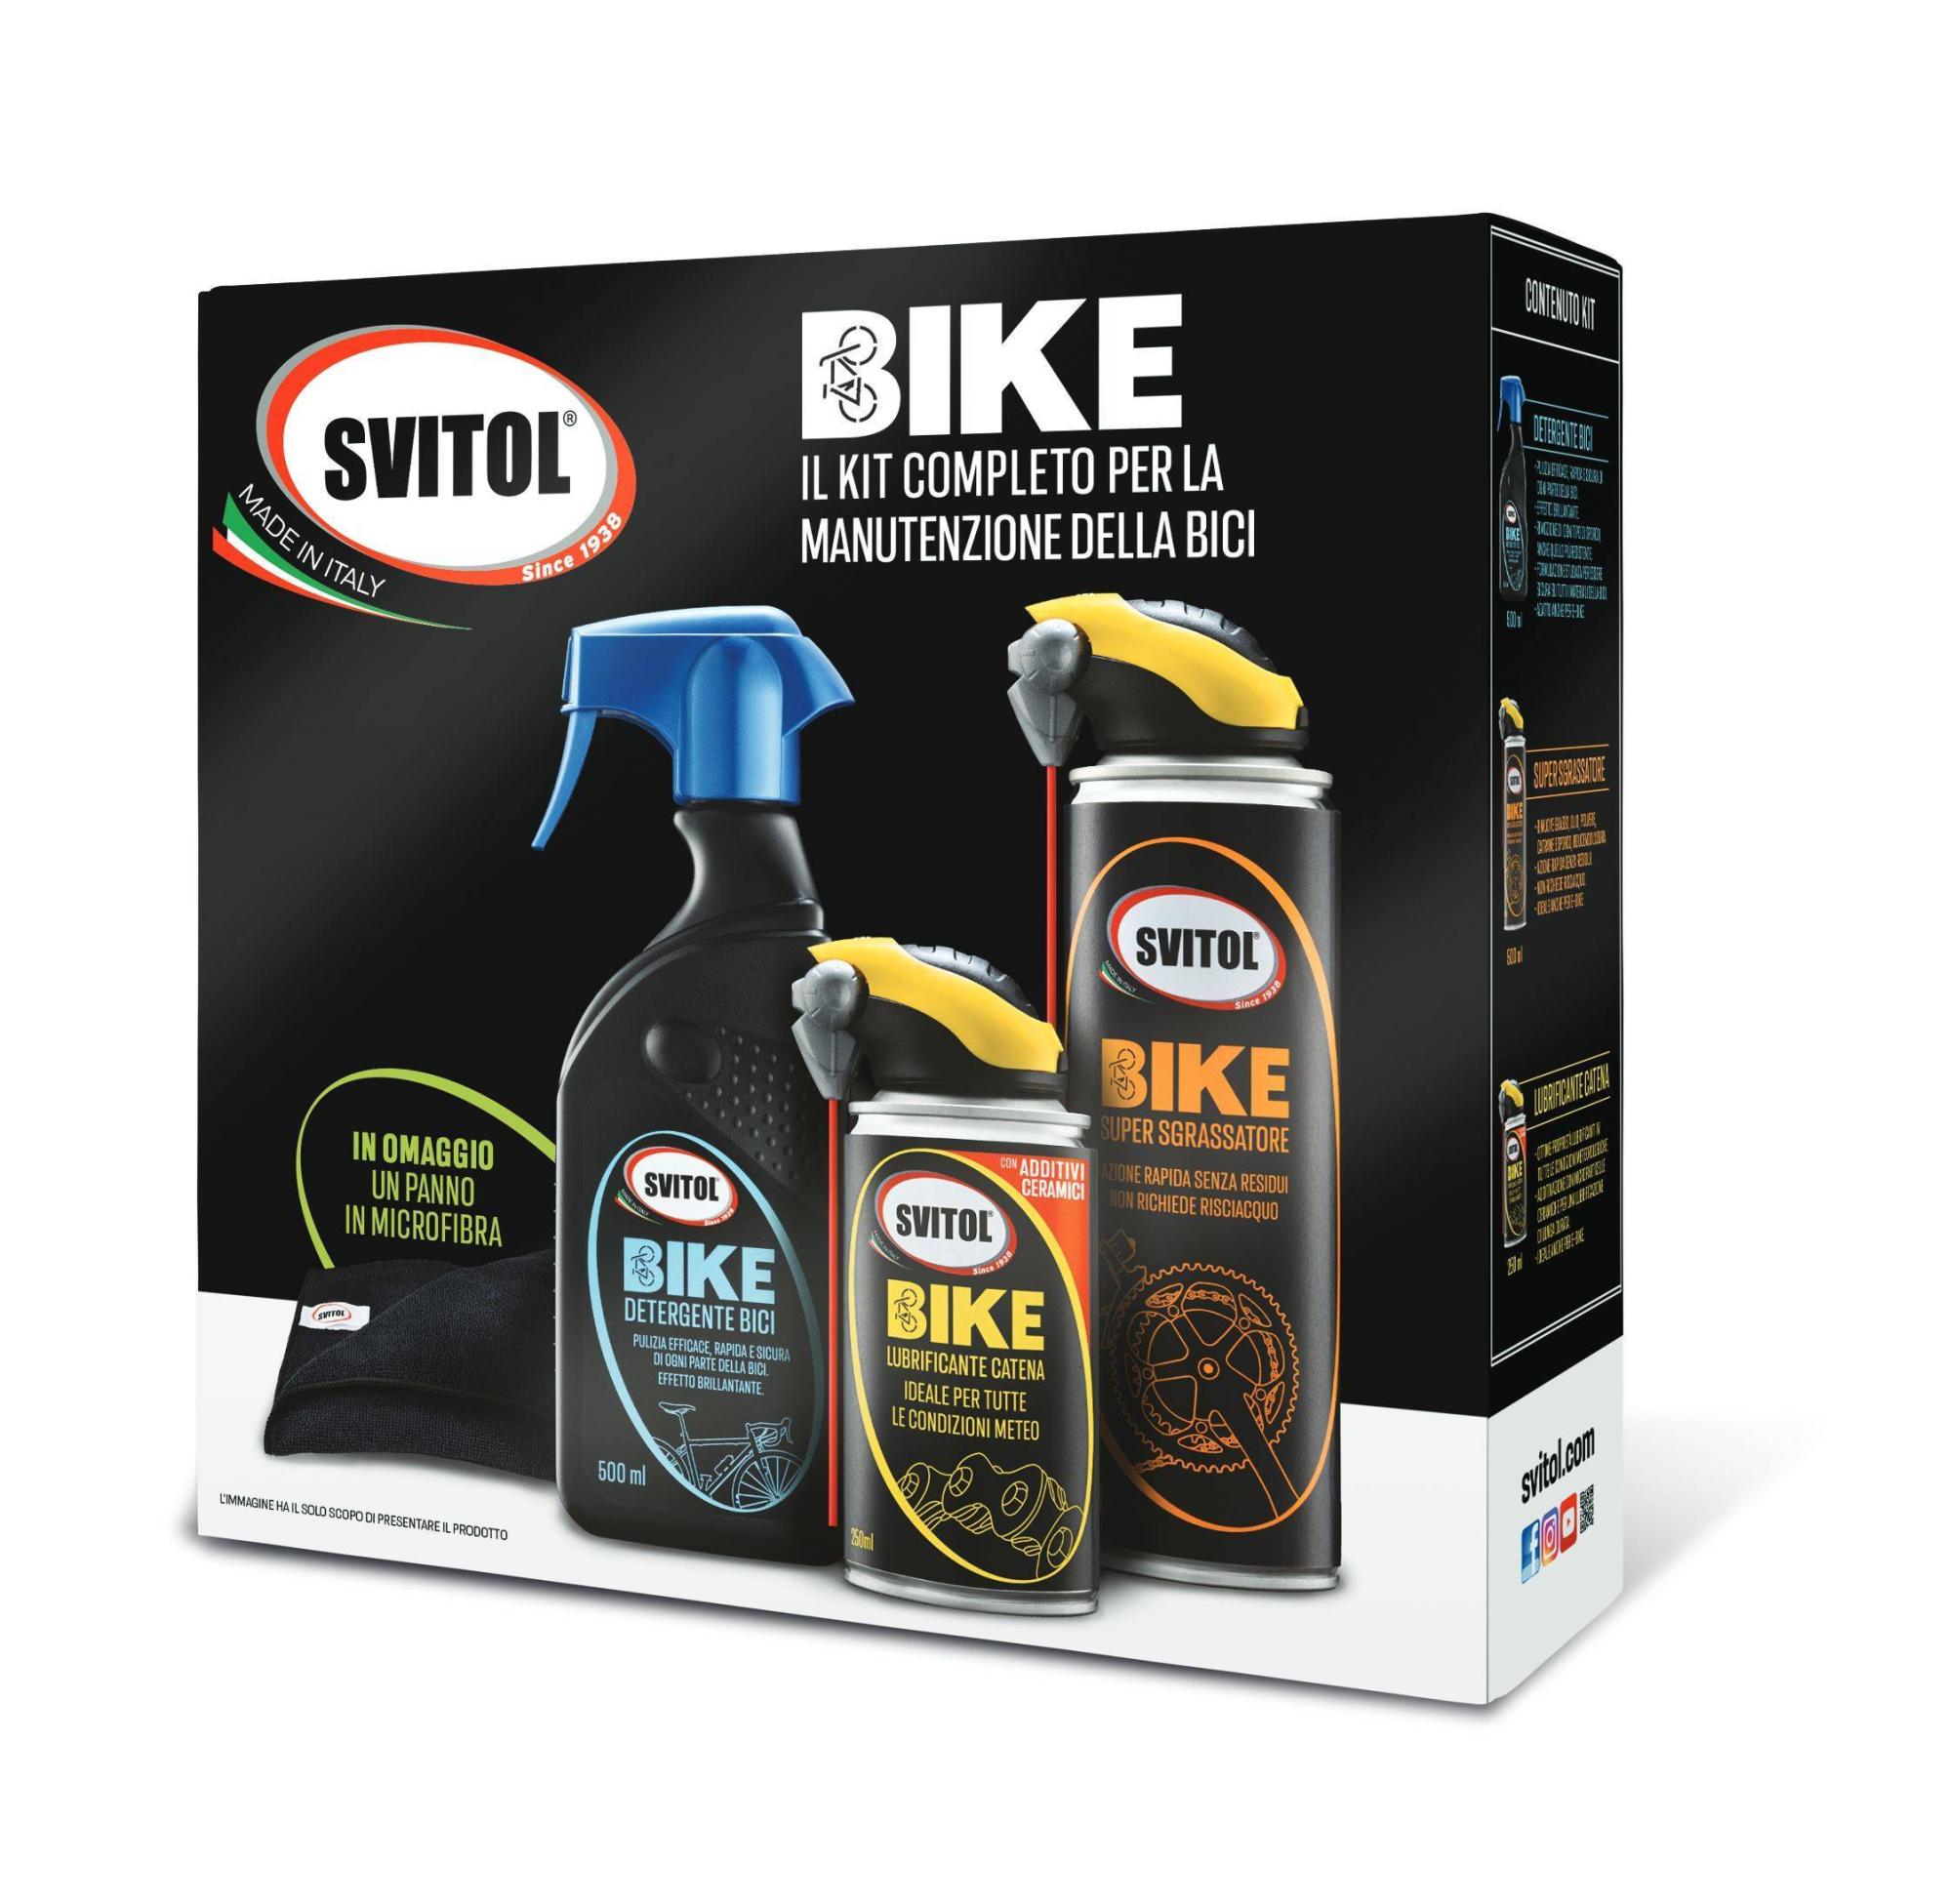 Svitol Bike, ecco i prodotti per la manutenzione di bici ed e-bike - News